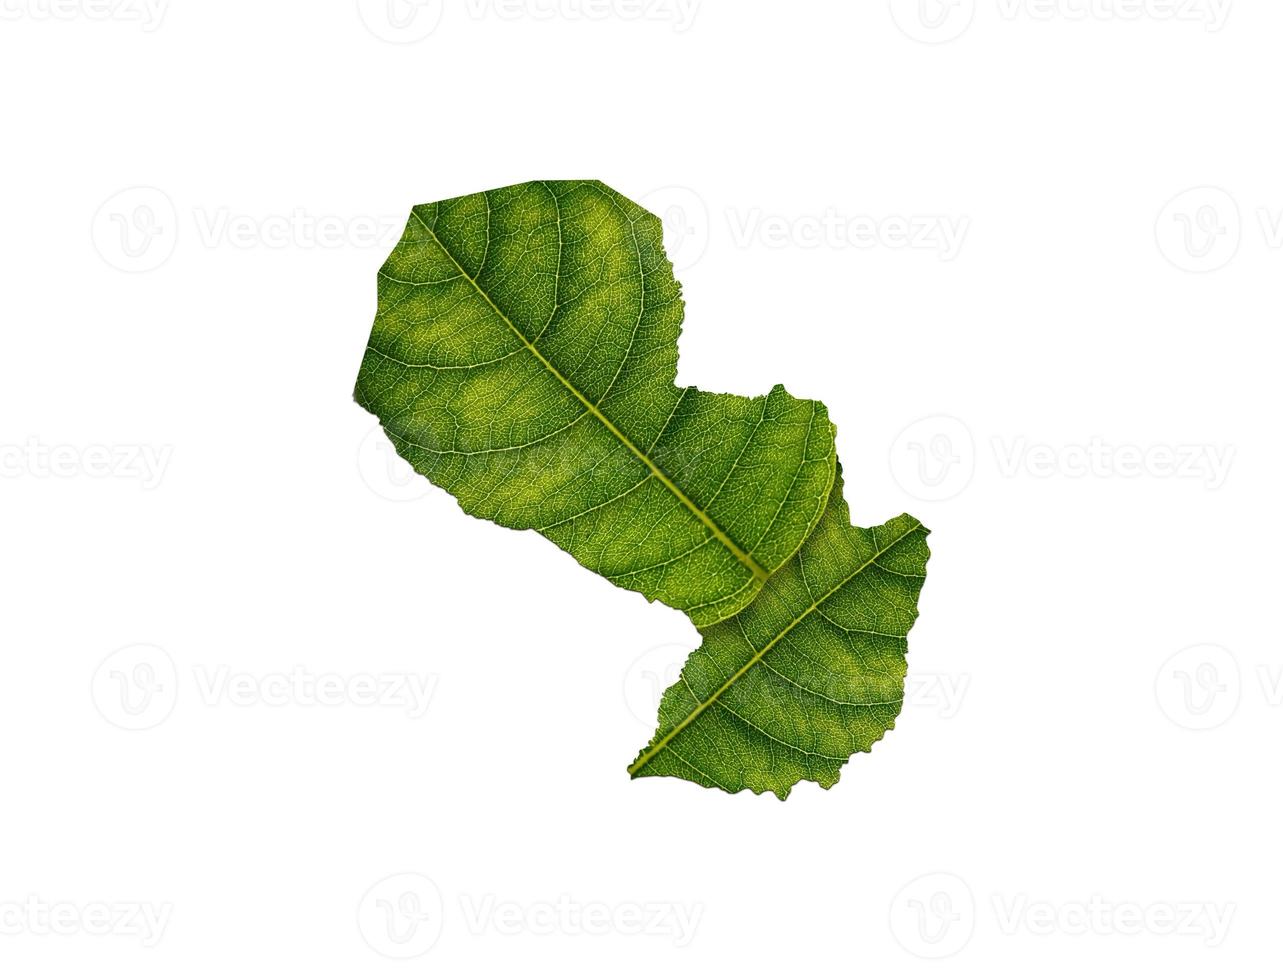 mapa de paraguay hecho de hojas verdes sobre el concepto de ecología de fondo del suelo foto